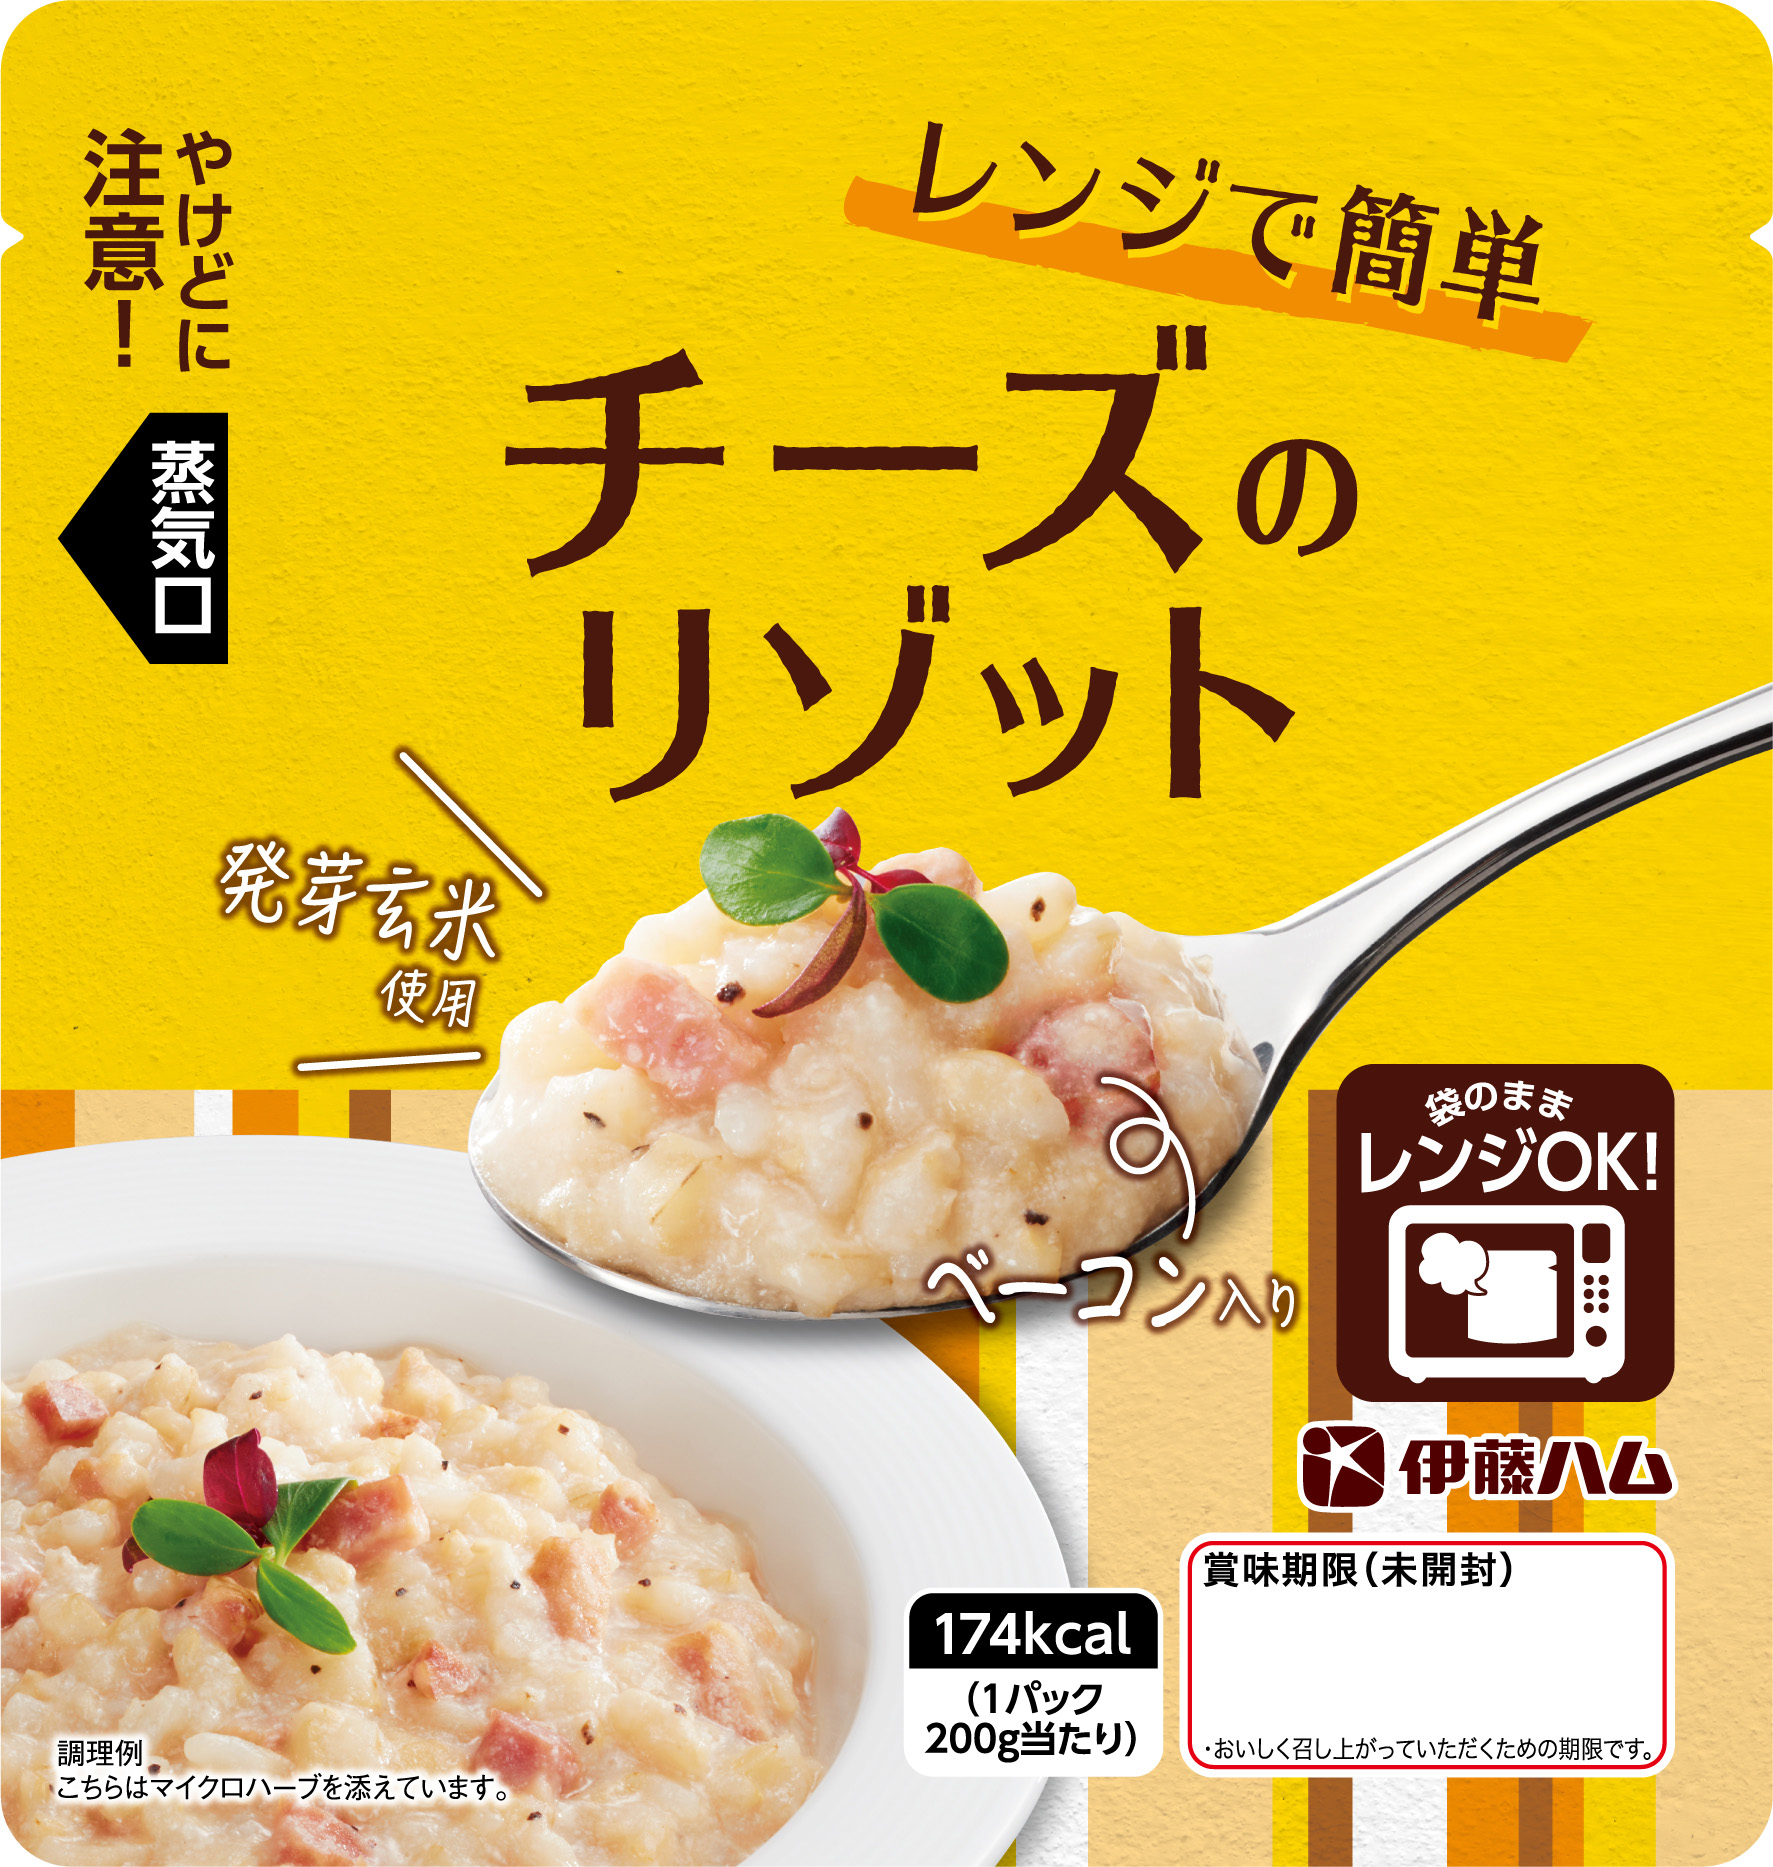 完熟トマトのリゾット チーズのリゾット ２品を新発売 伊藤ハム米久hdのプレスリリース